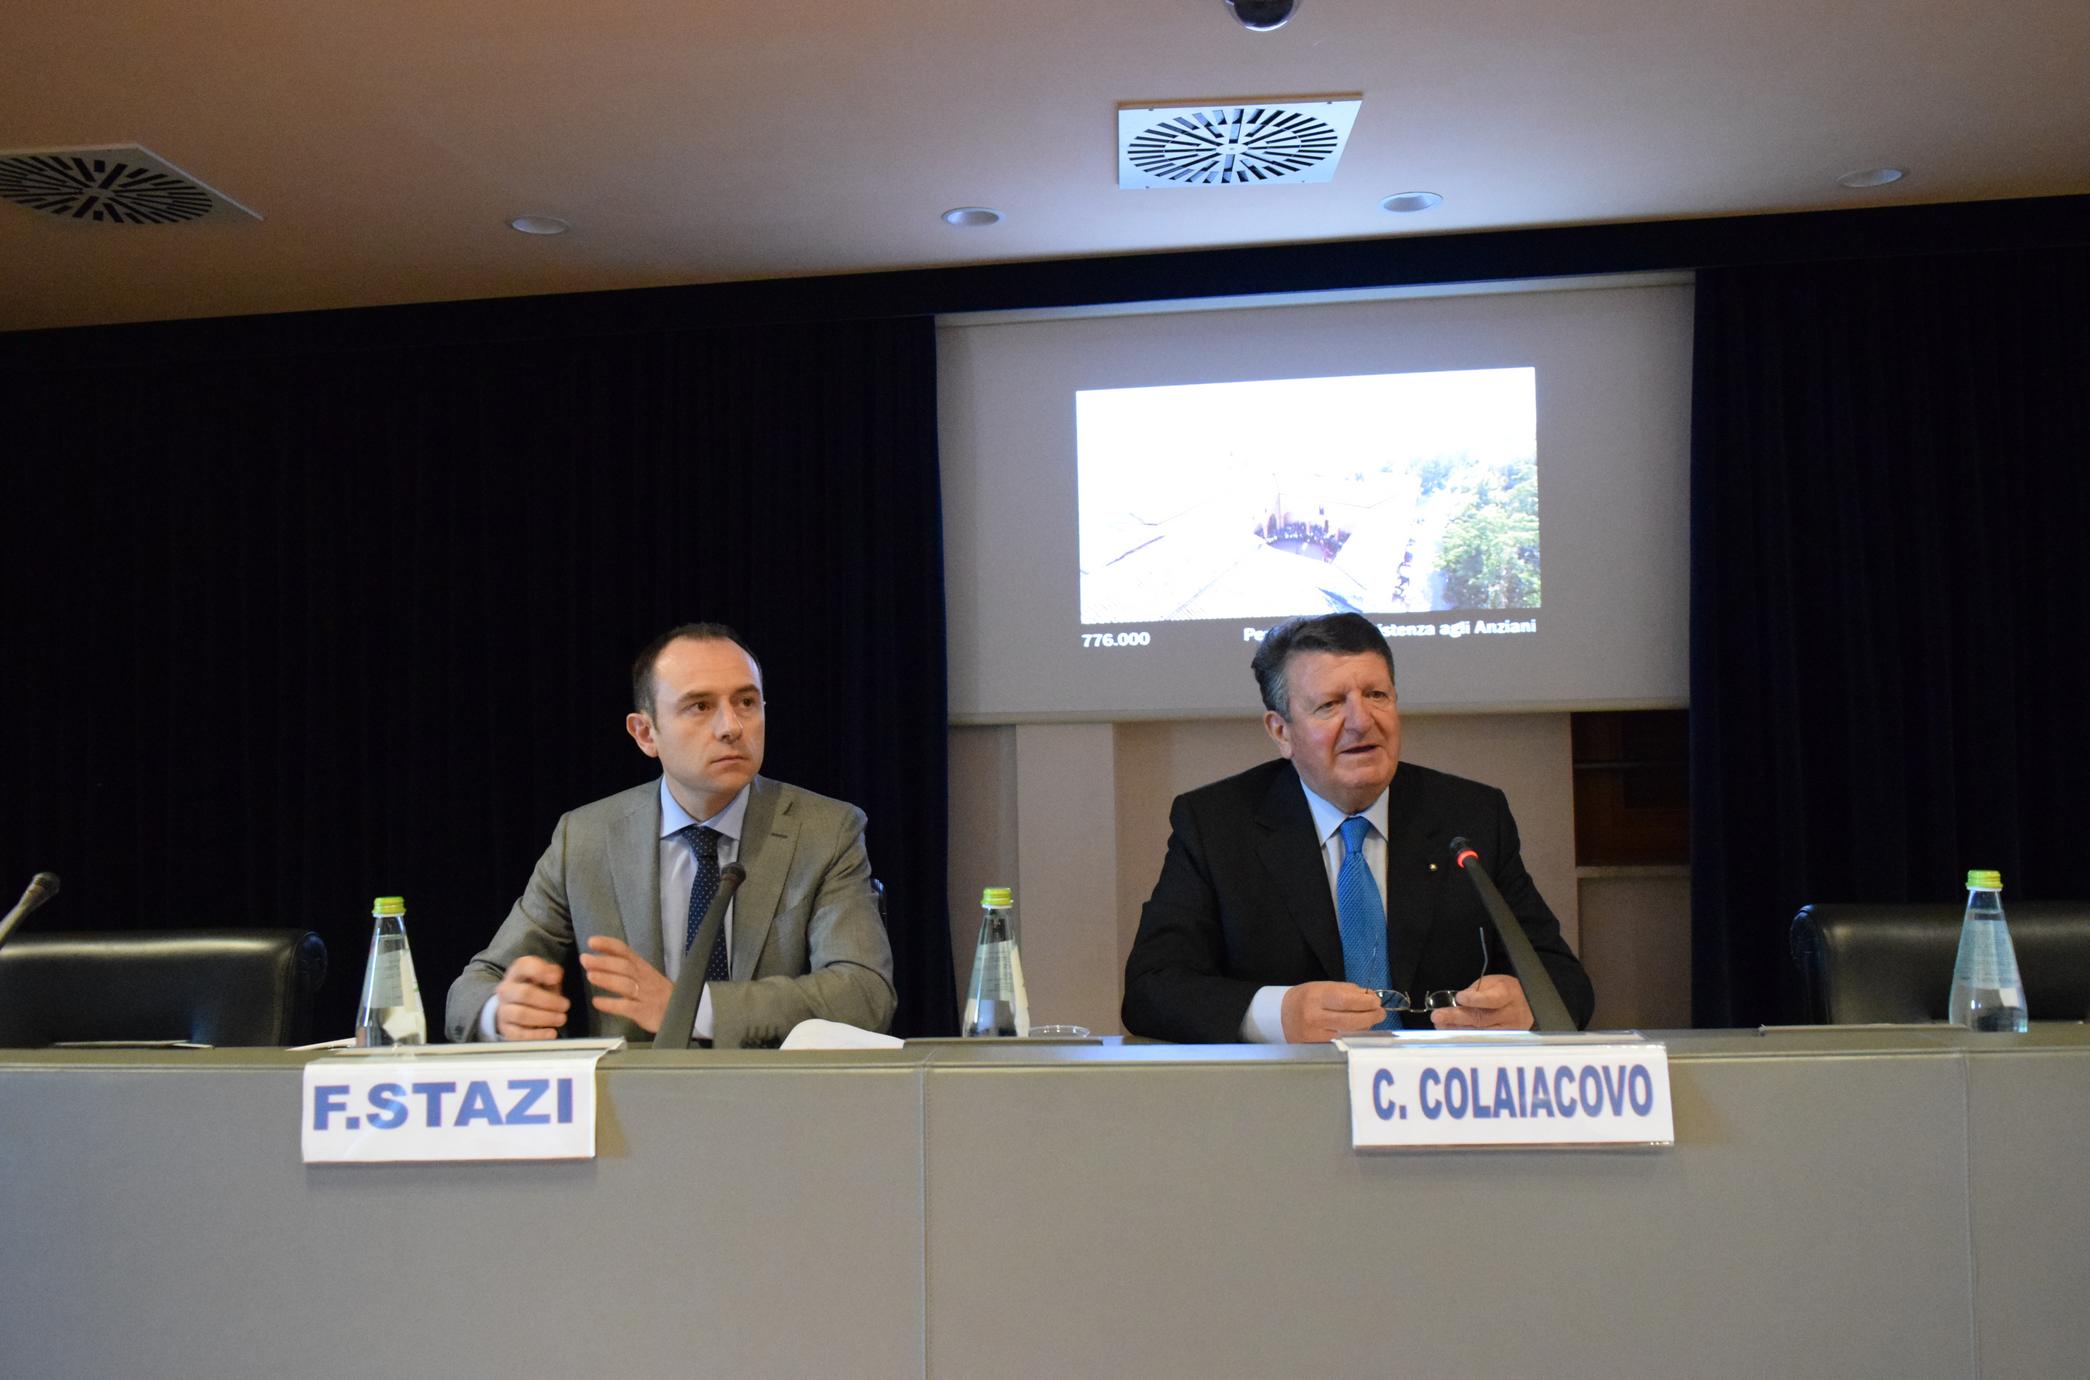 Il segretario generale Fabrizio Stazi e il presidente Carlo Colaiacovo1